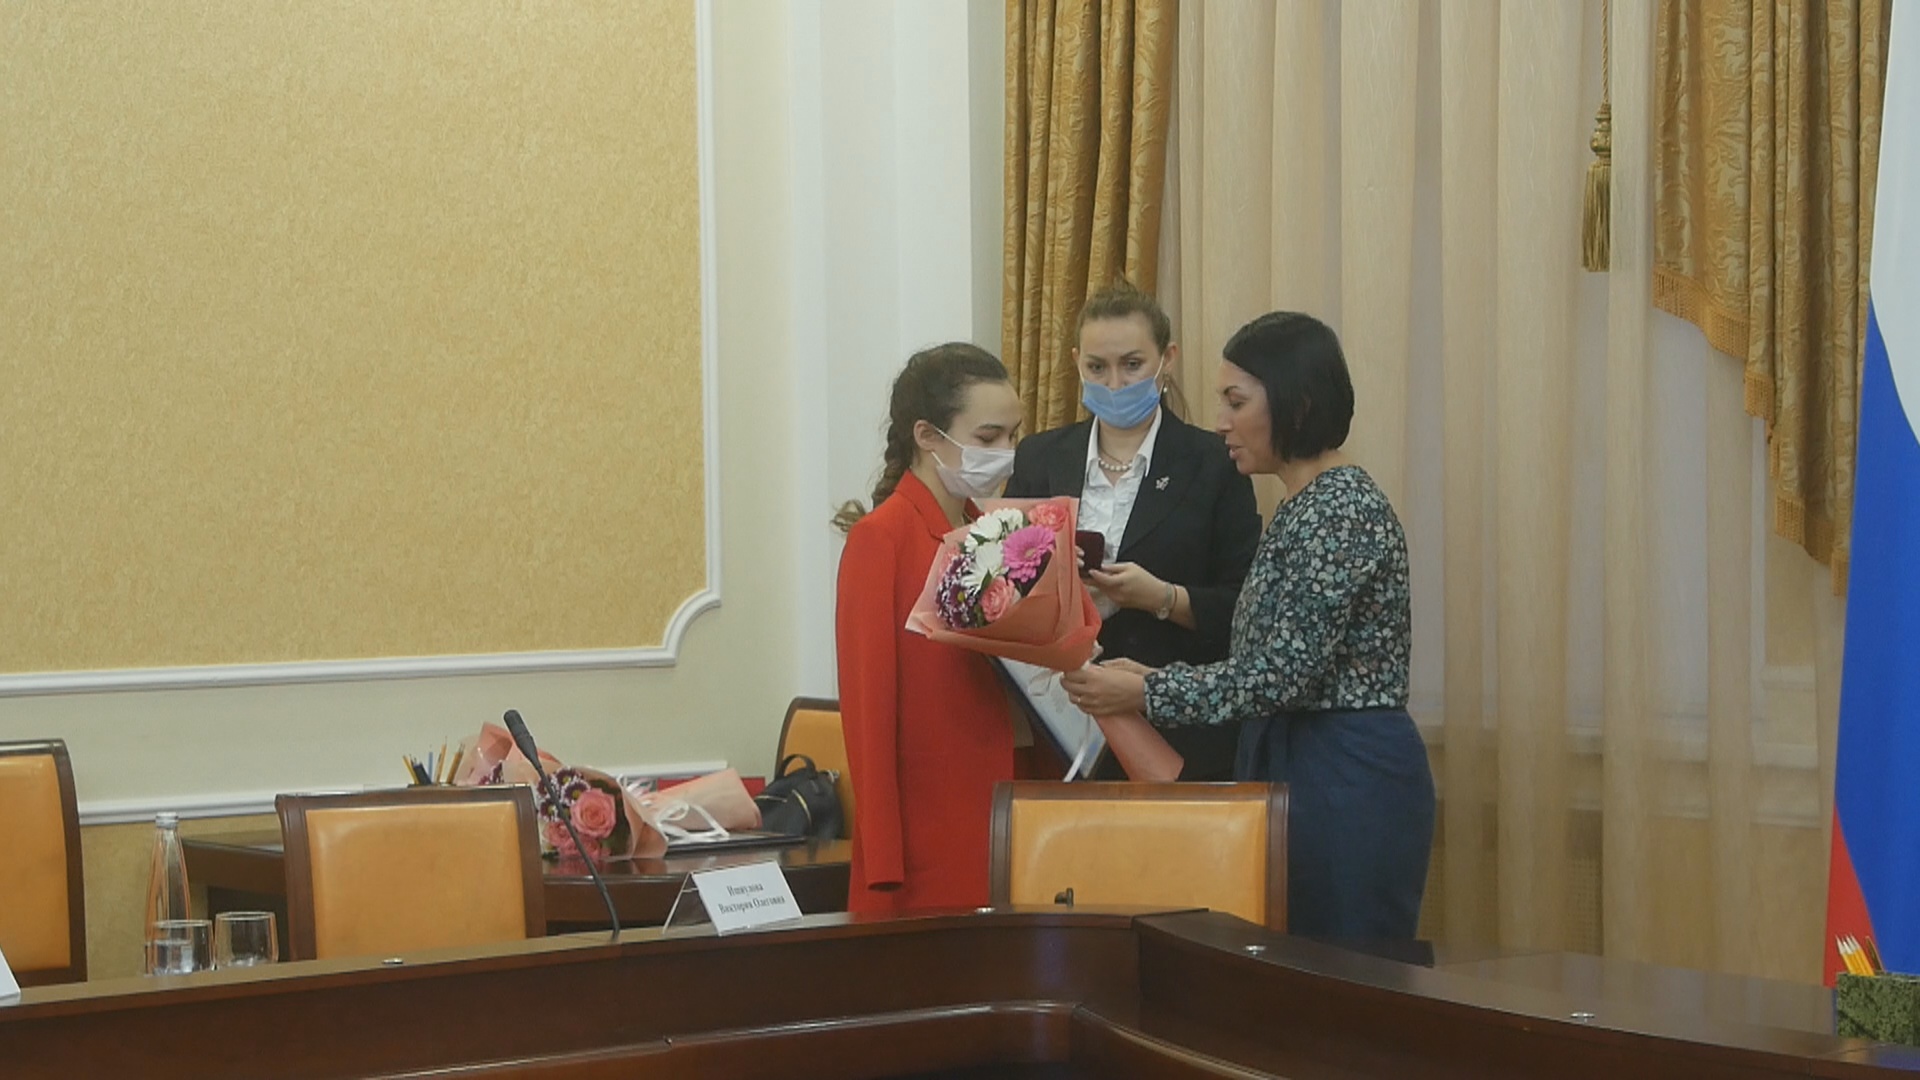 Паралимпийки Александра Неделько и Виктория Ищиулова получили благодарность от губернатора